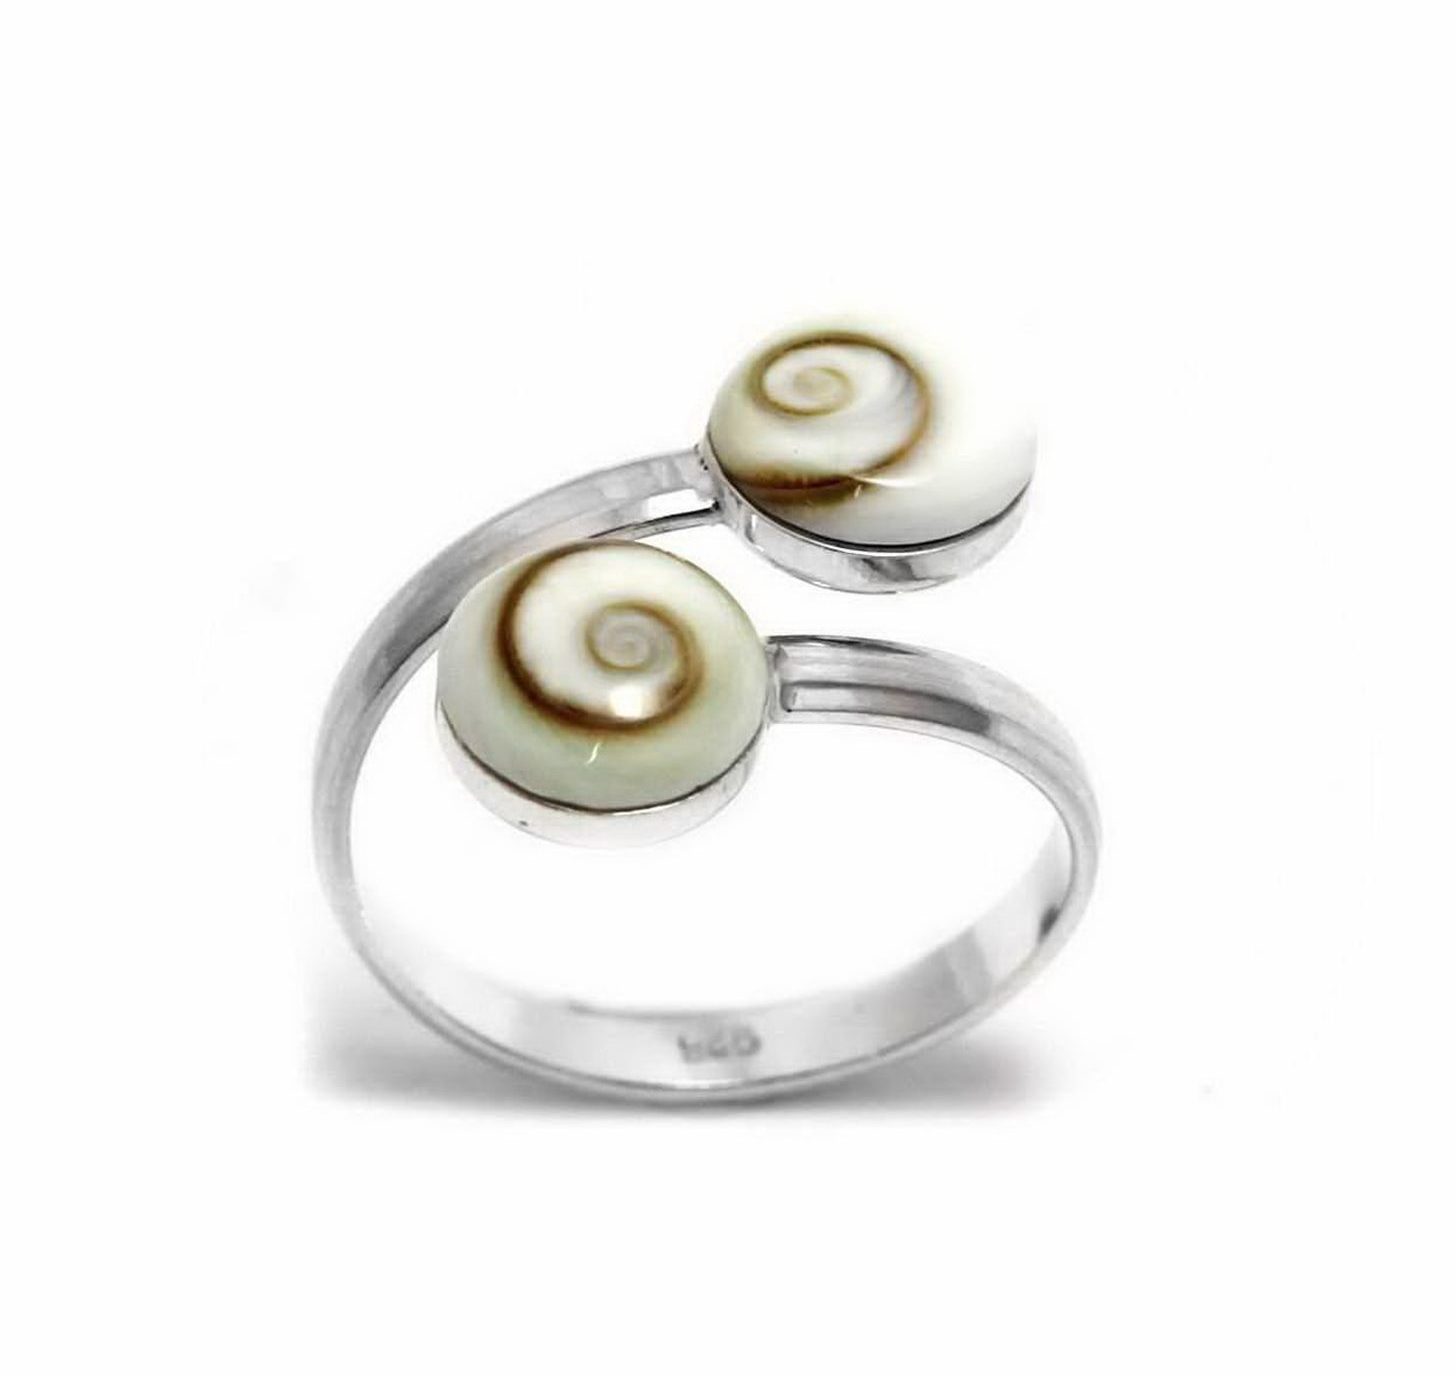 Δαχτυλίδι Ασημένιο με Διπλό Μάτι της Θάλασσας